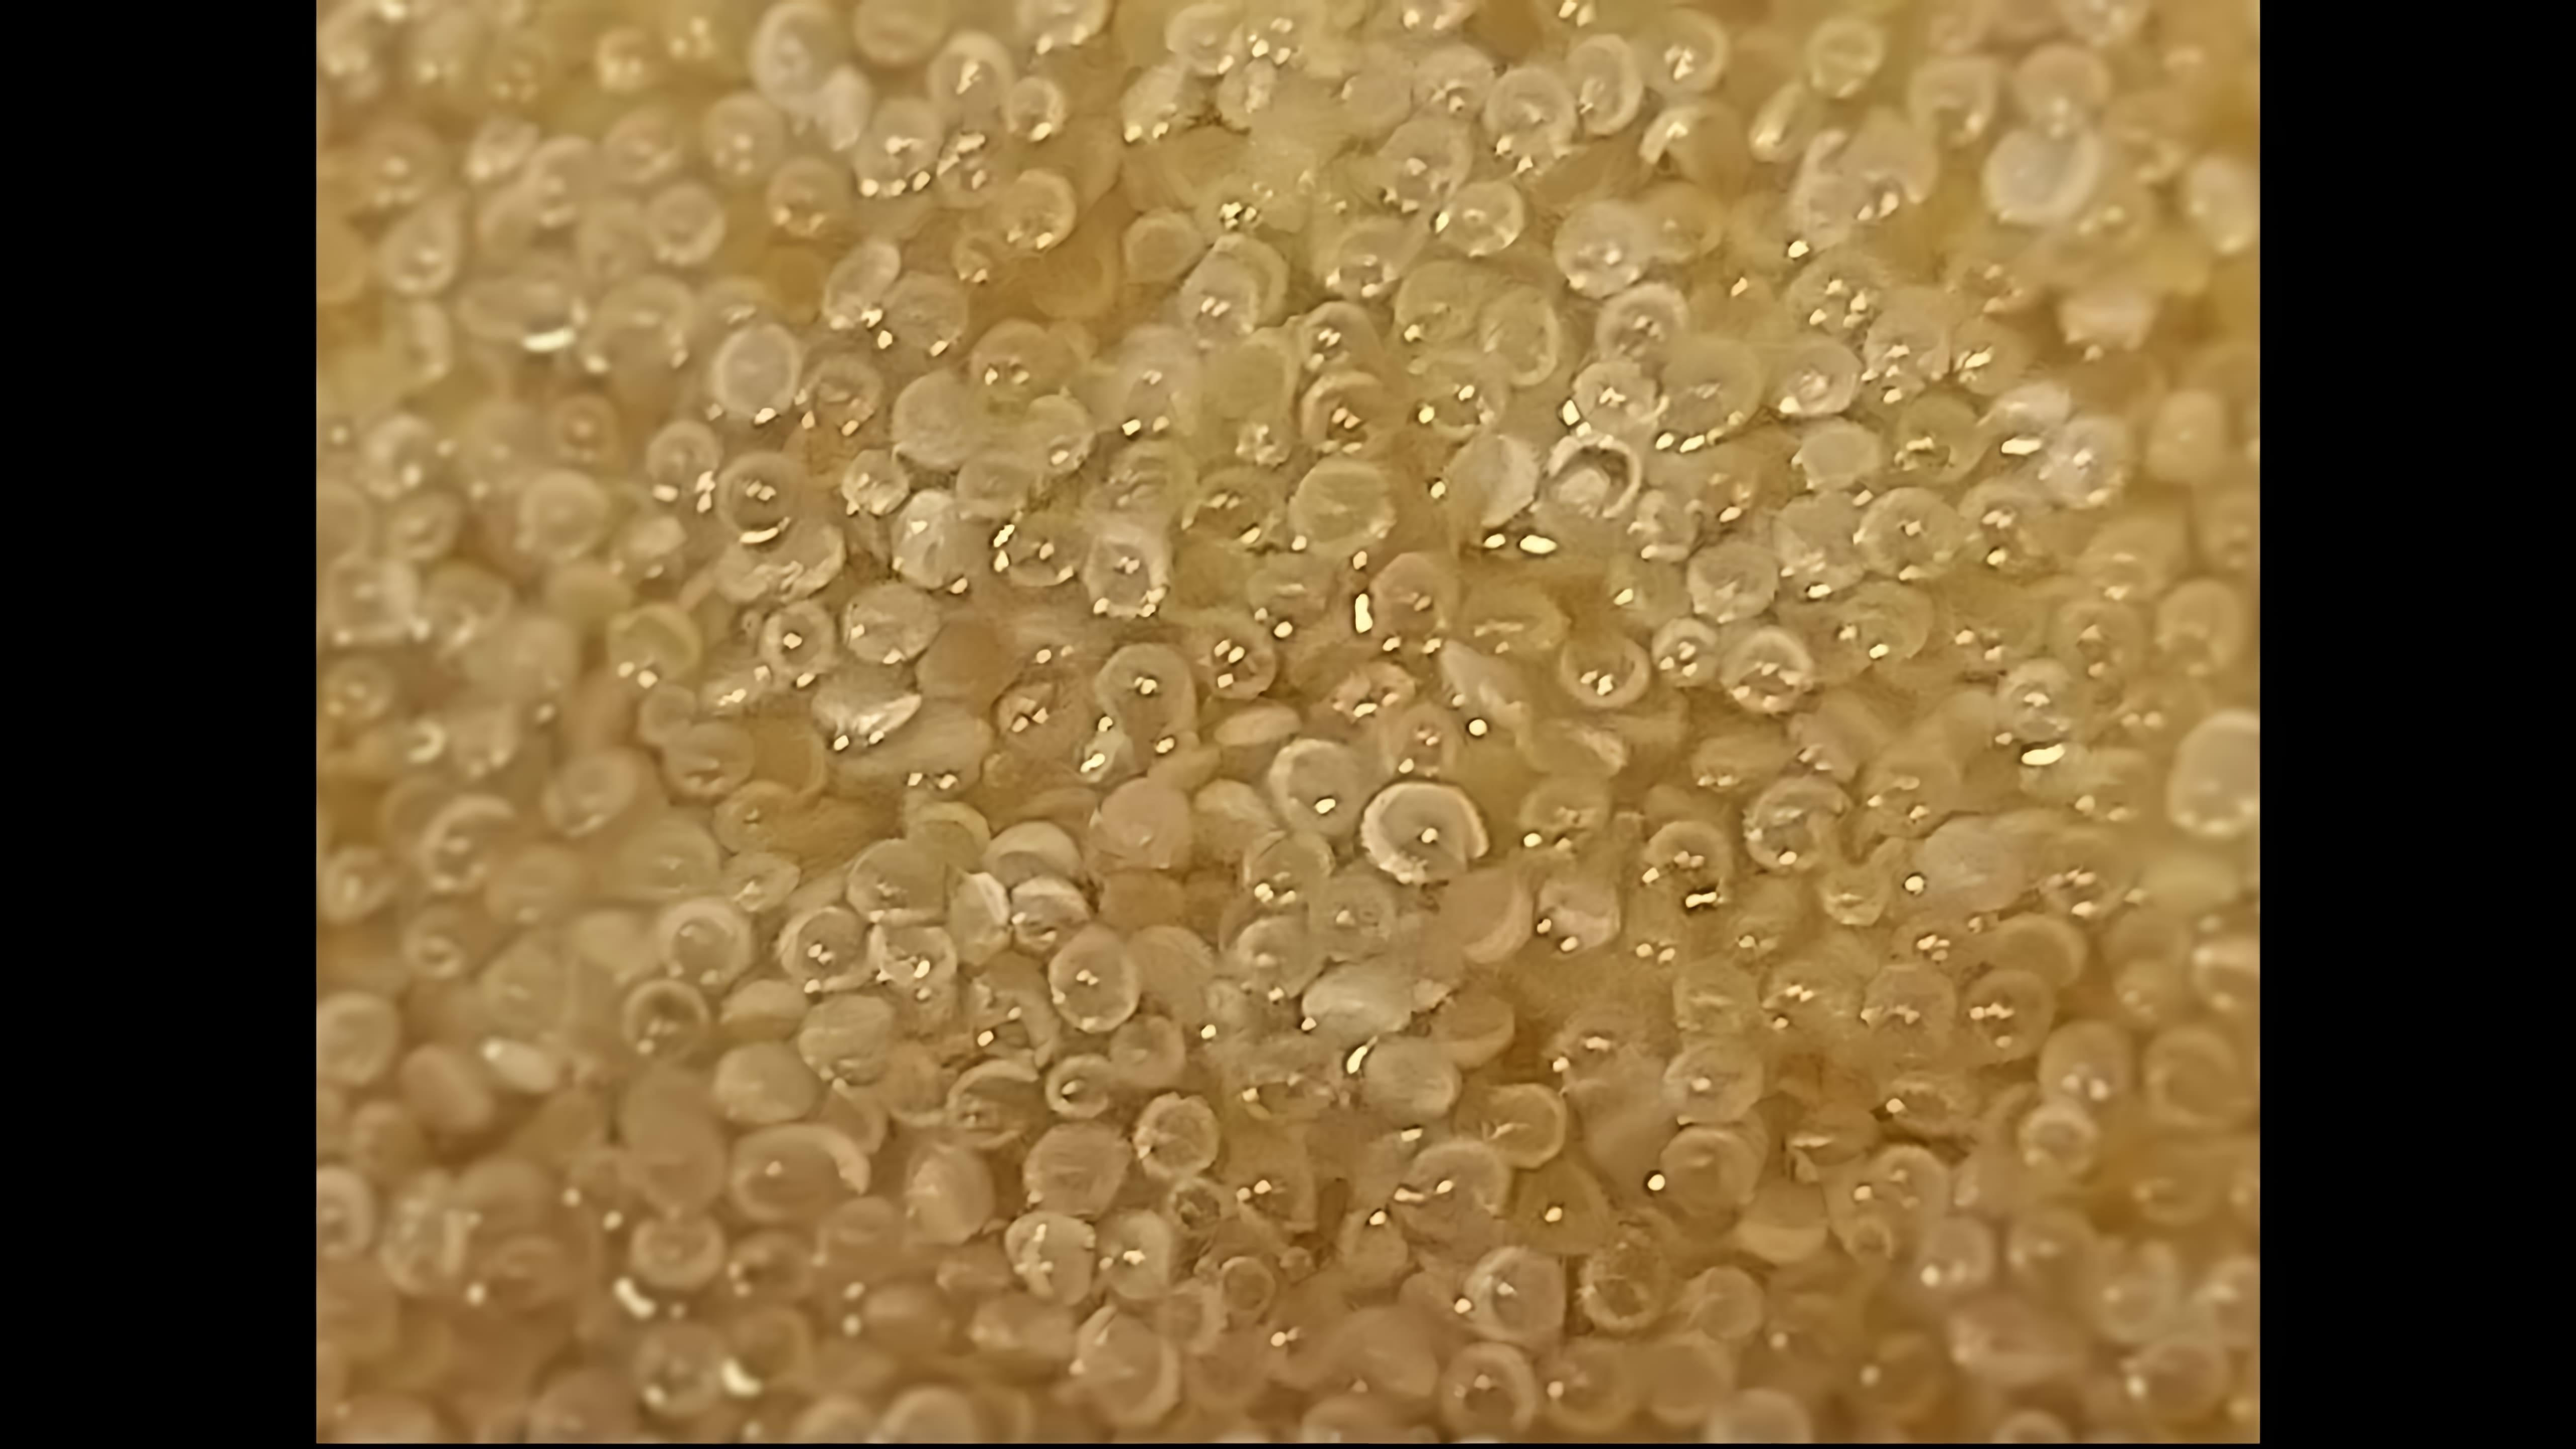 В данном видео демонстрируется процесс приготовления амаранта, который является древним продуктом, богатым белком, клетчаткой, витаминами и минералами